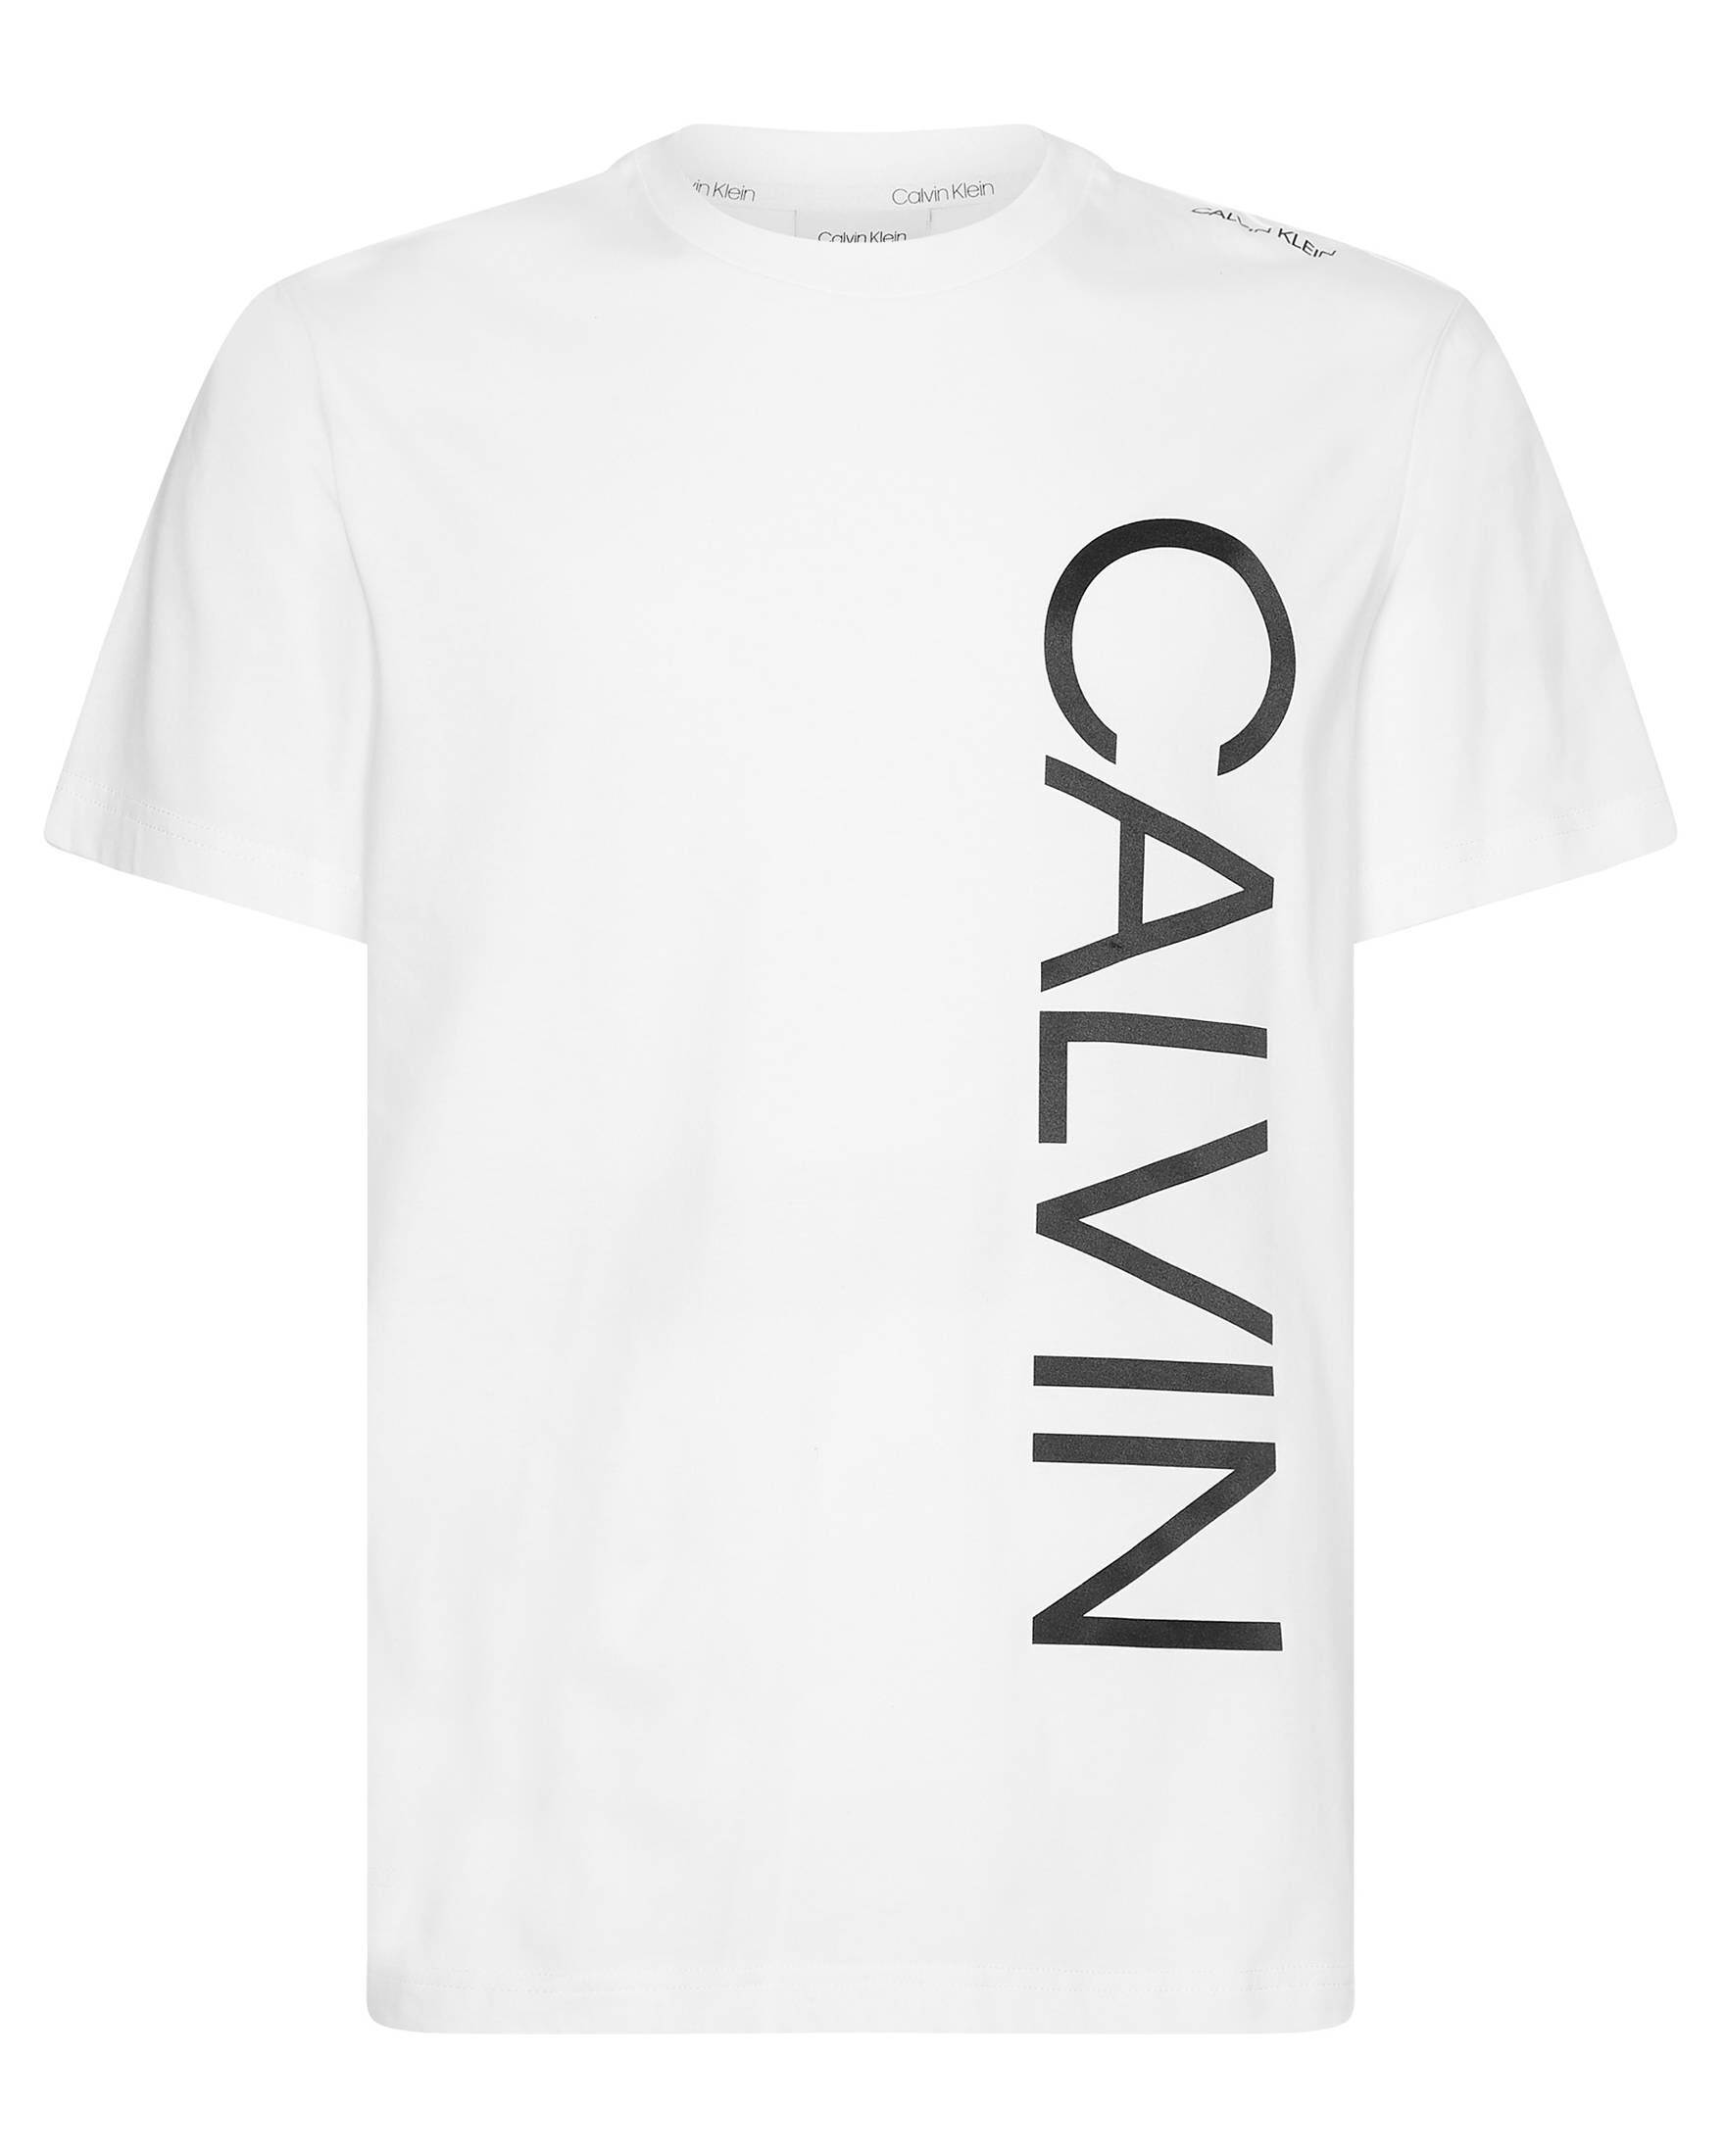 ABSTRACT Herren engelhorn | ICONIC CALVIN KLEIN LOGO kaufen T-Shirt